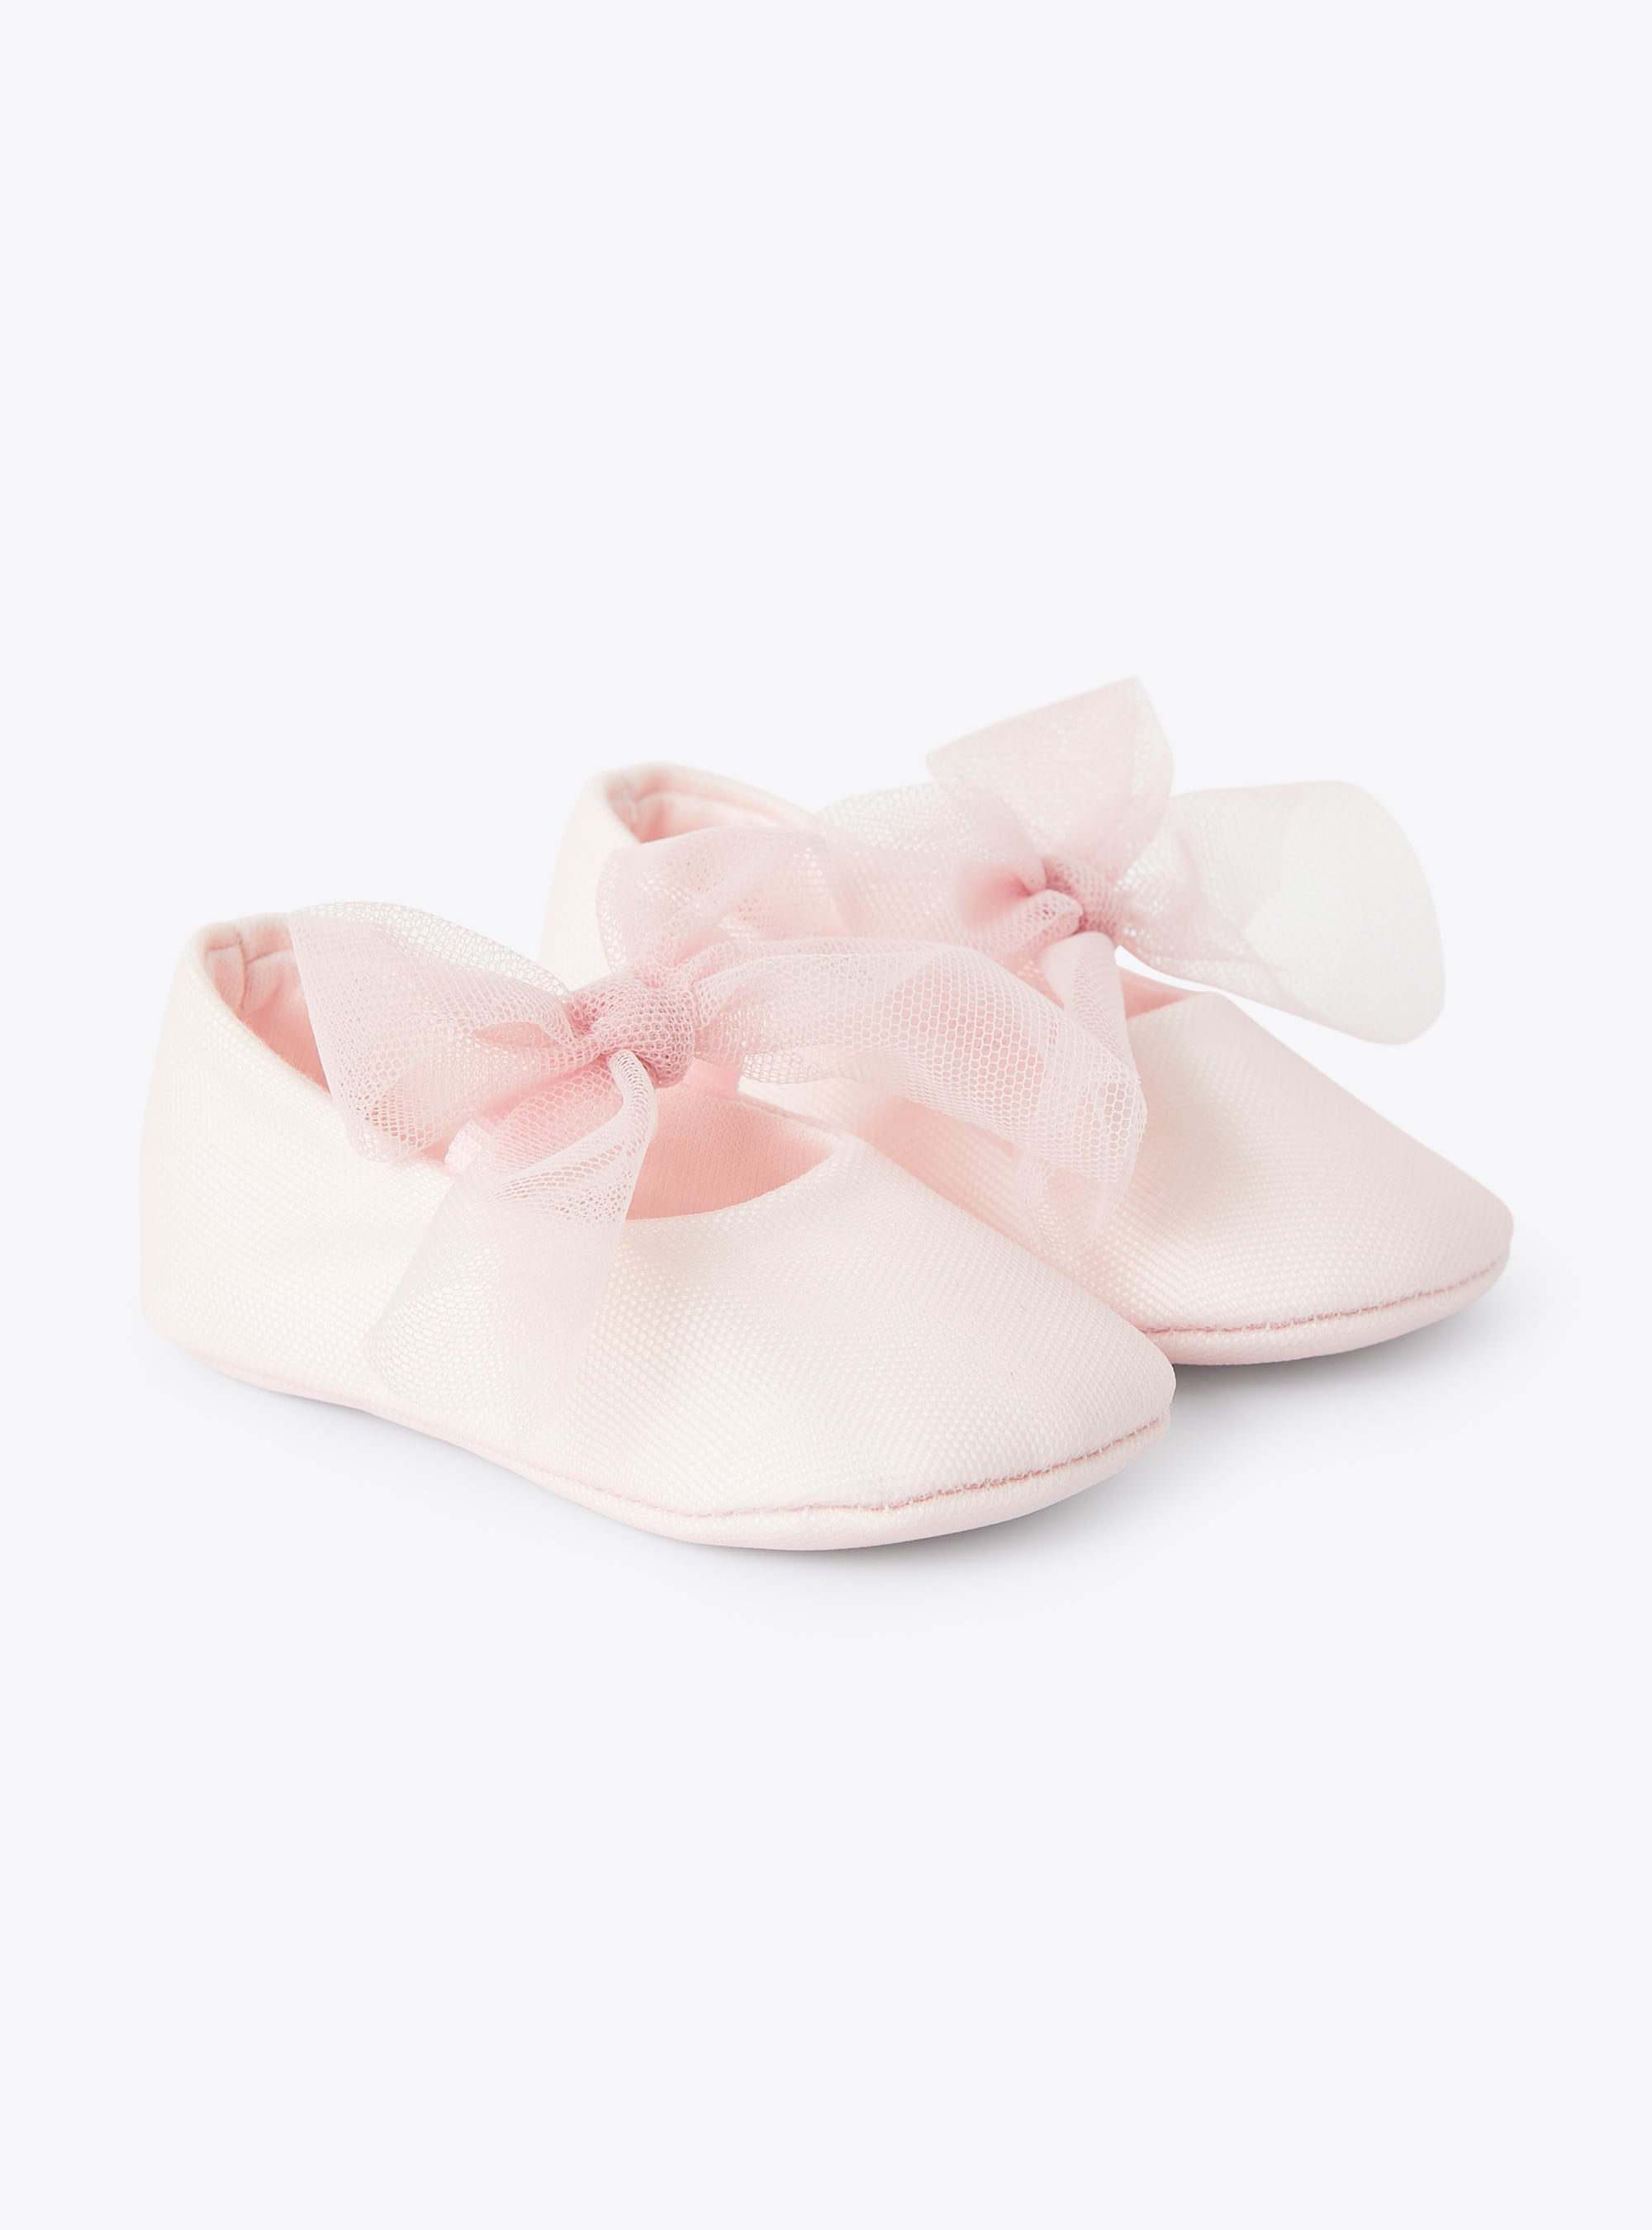 Scarpine da neonata con fiocco in tulle rosa - Rosa | Il Gufo